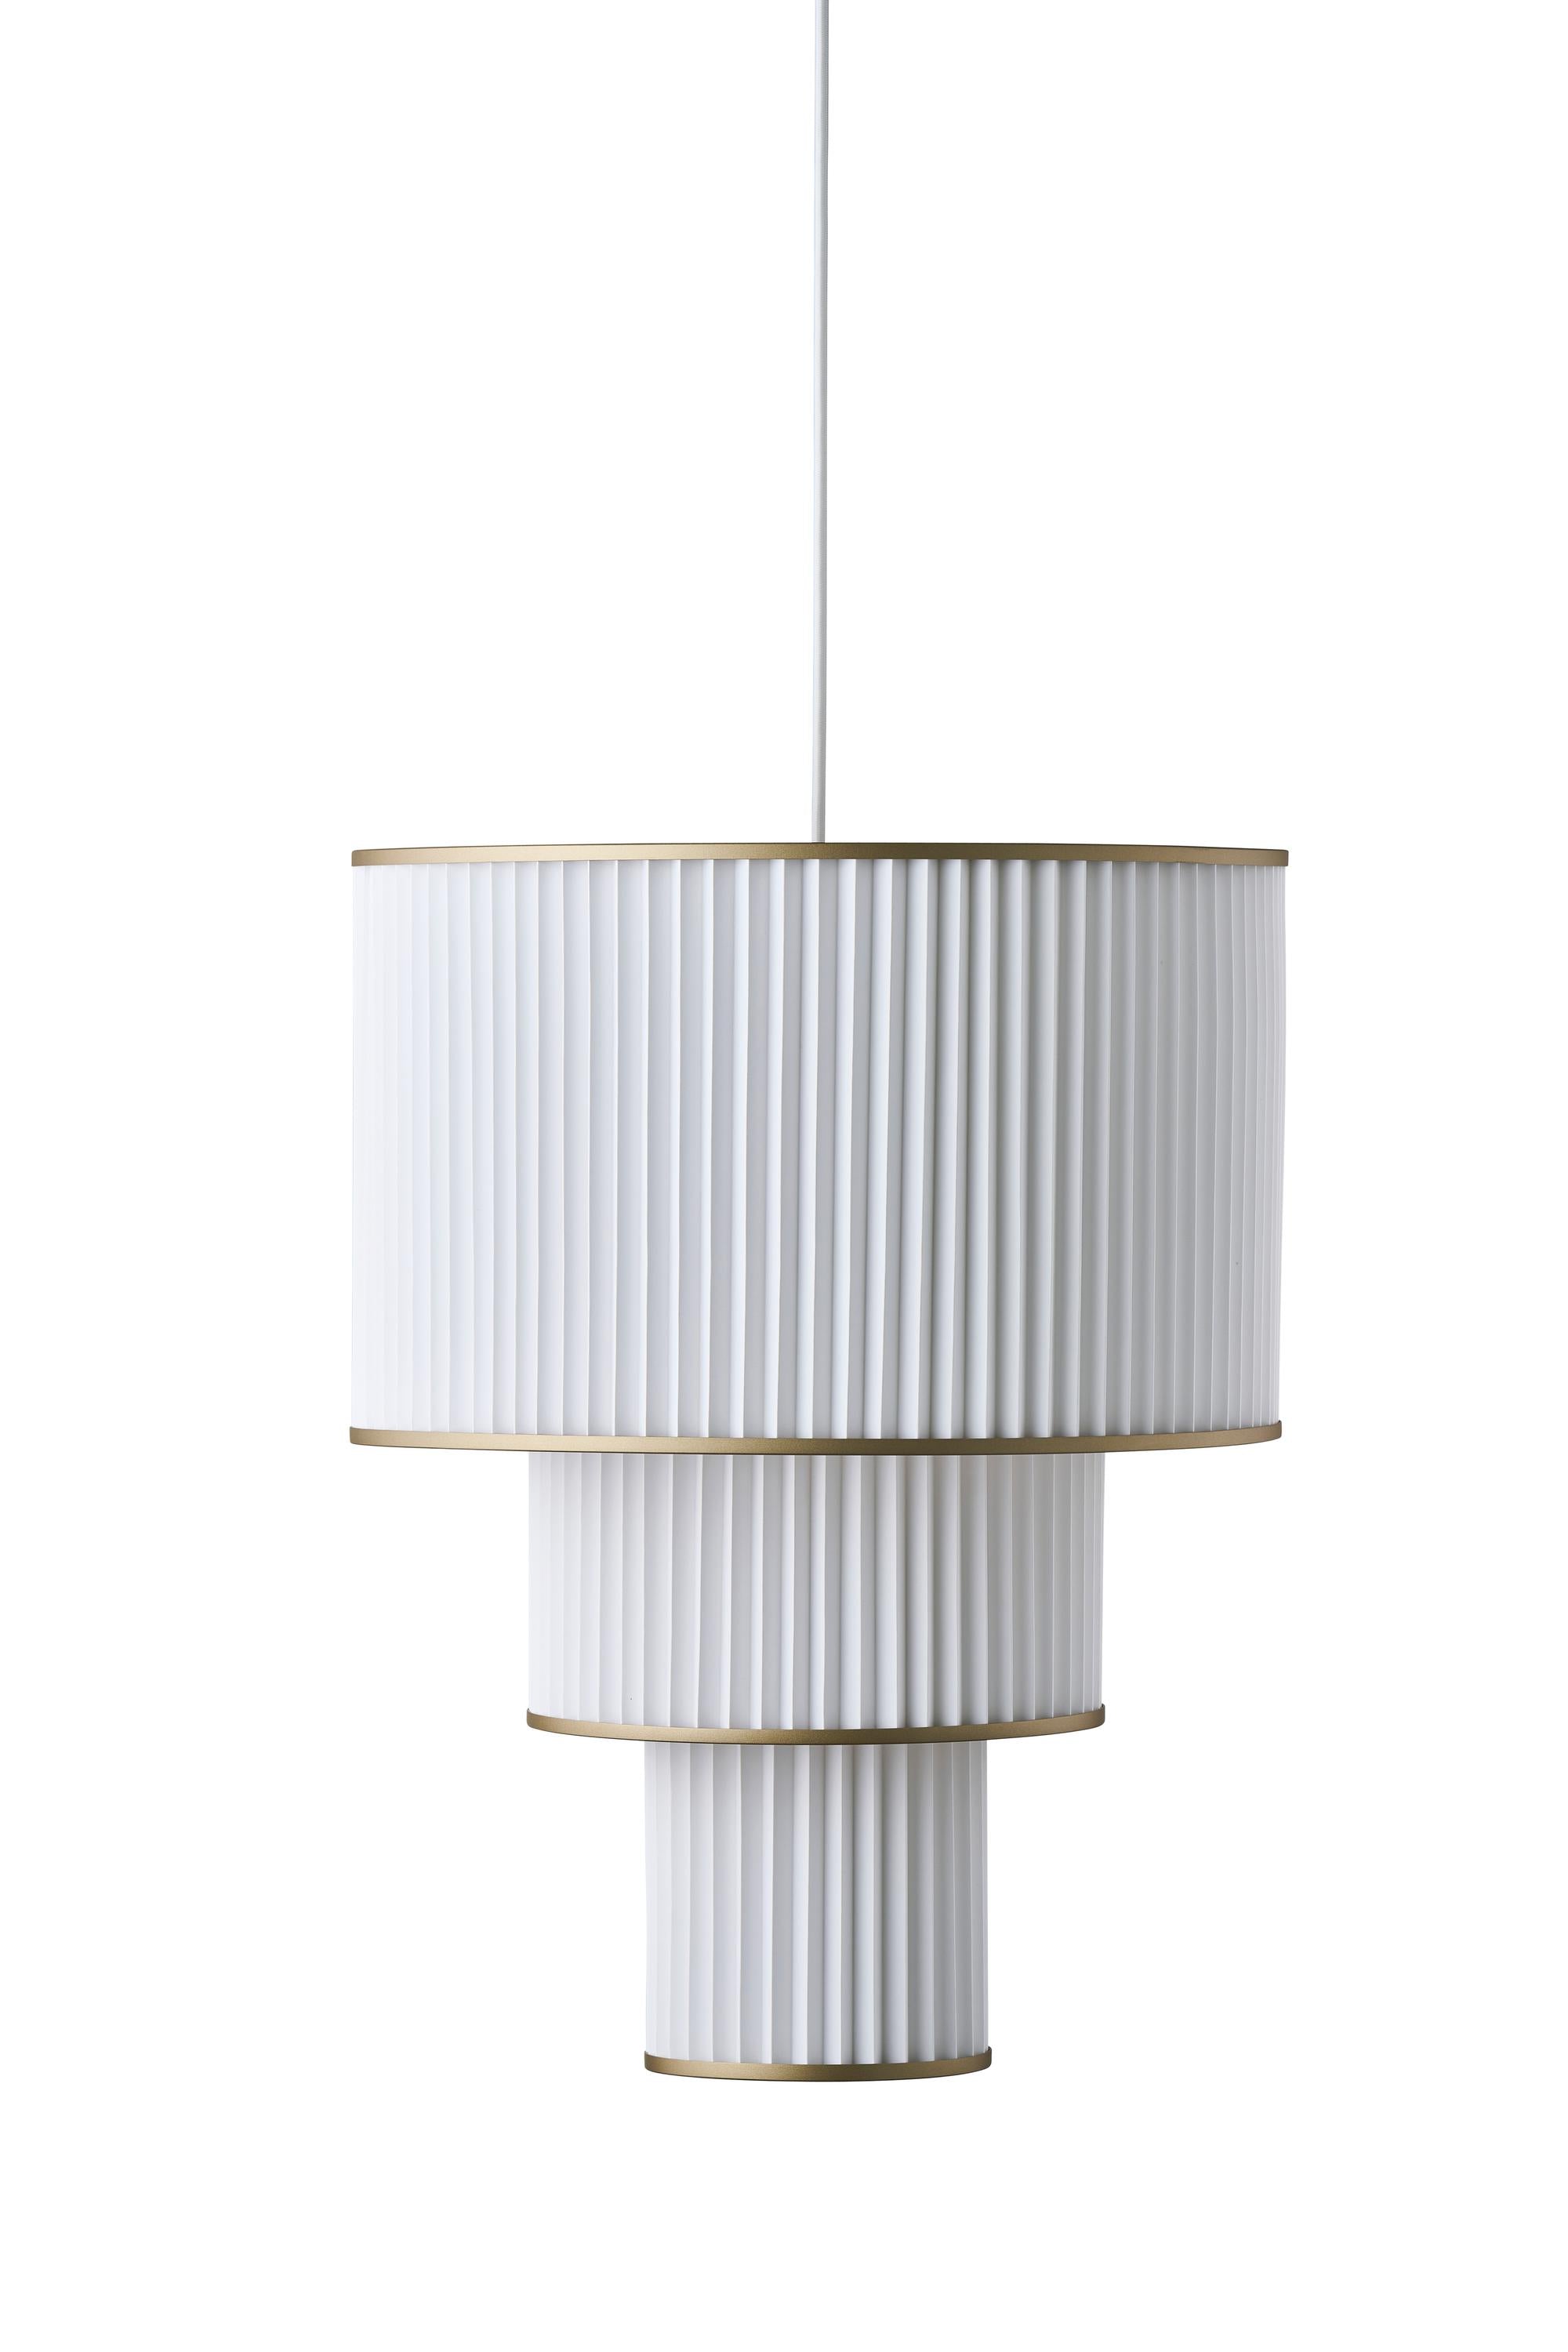 Le Klint PLIVELLO Lampe à suspension dorée / blanc avec 3 nuances (S M L)